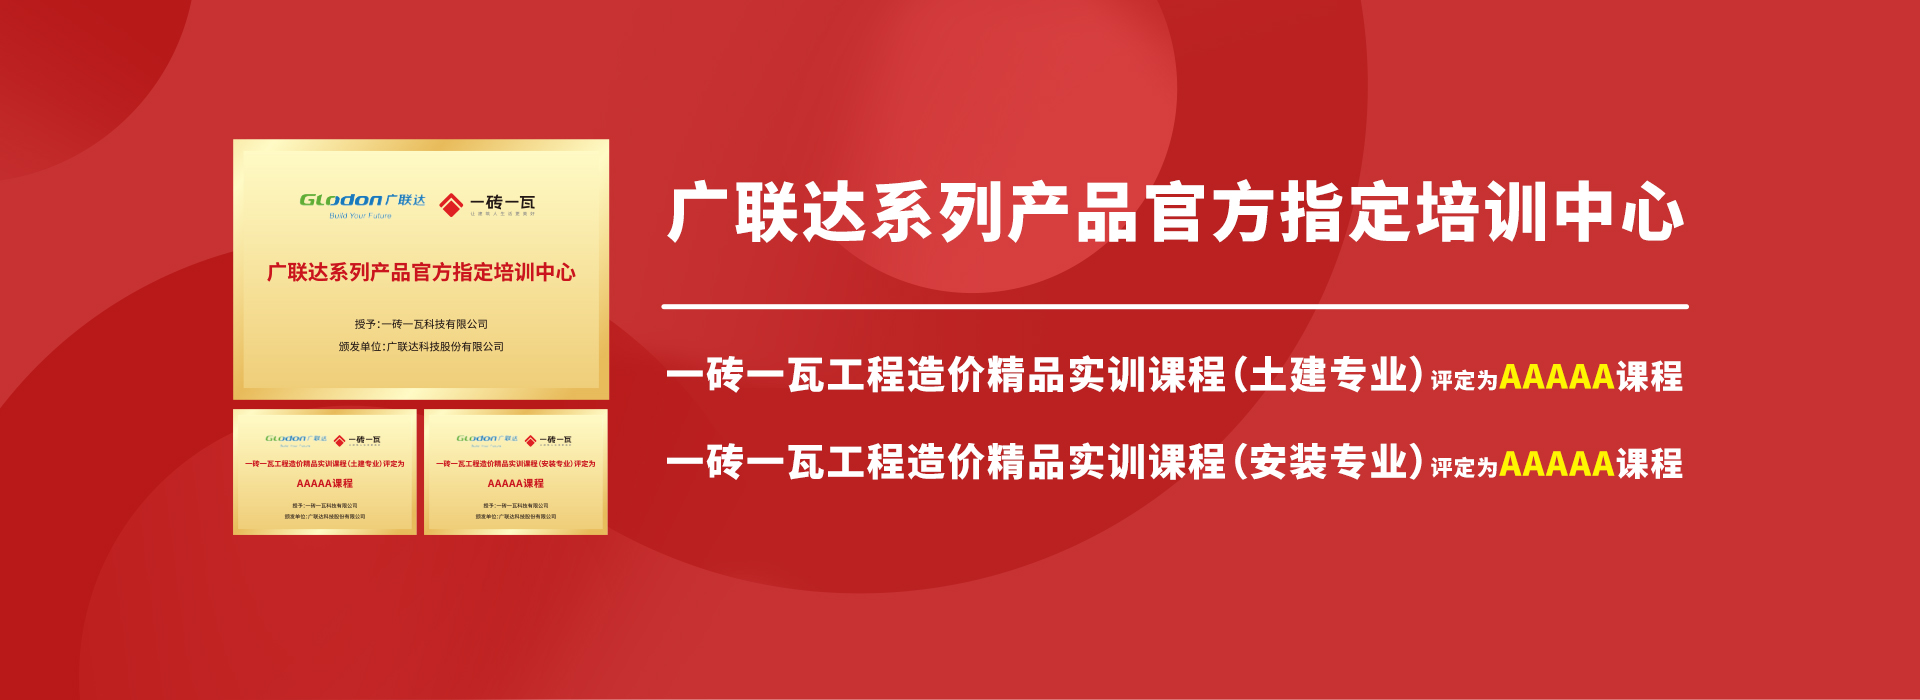 广联达系列产品官方指定培训中心